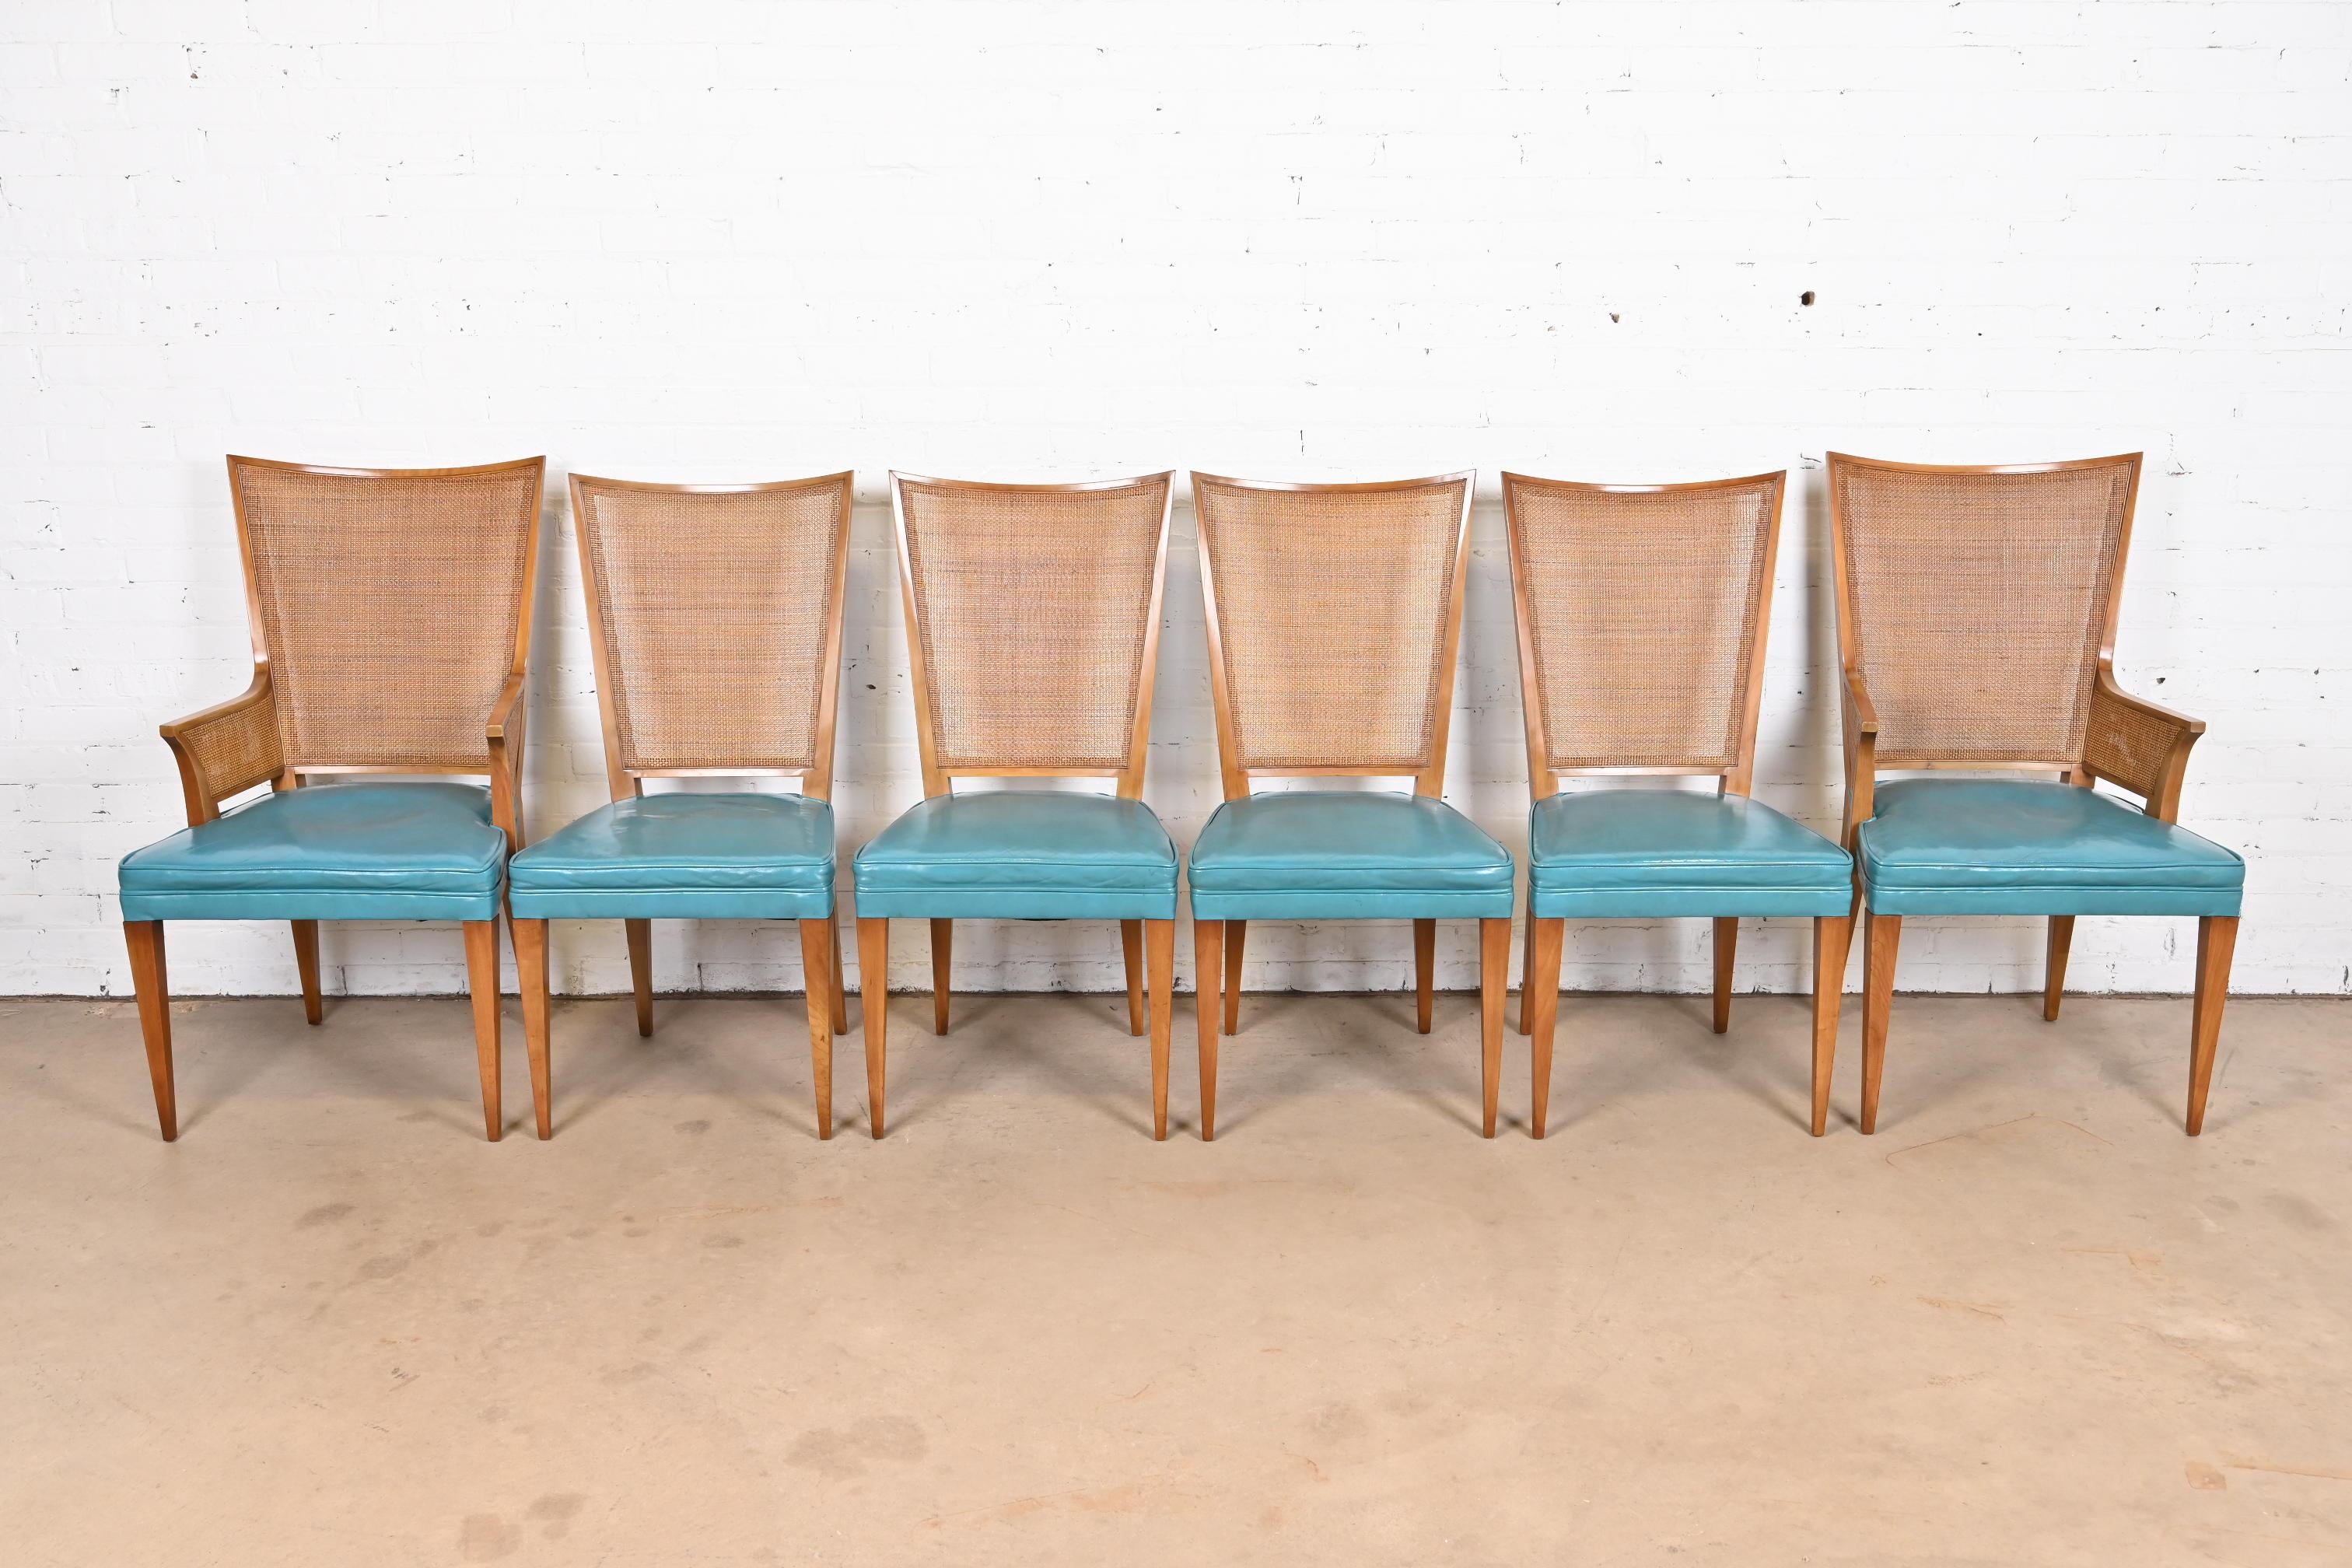 Ein schöner Satz von sechs Mid-Century Modern Esszimmerstühlen

Von John Widdicomb

USA, ca. 1950er Jahre

Massive Rahmen aus Nussbaumholz mit gepolsterten Sitzflächen und Rückenlehnen aus Rohrgeflecht sowie gepolsterten Sitzen aus türkisfarbenem